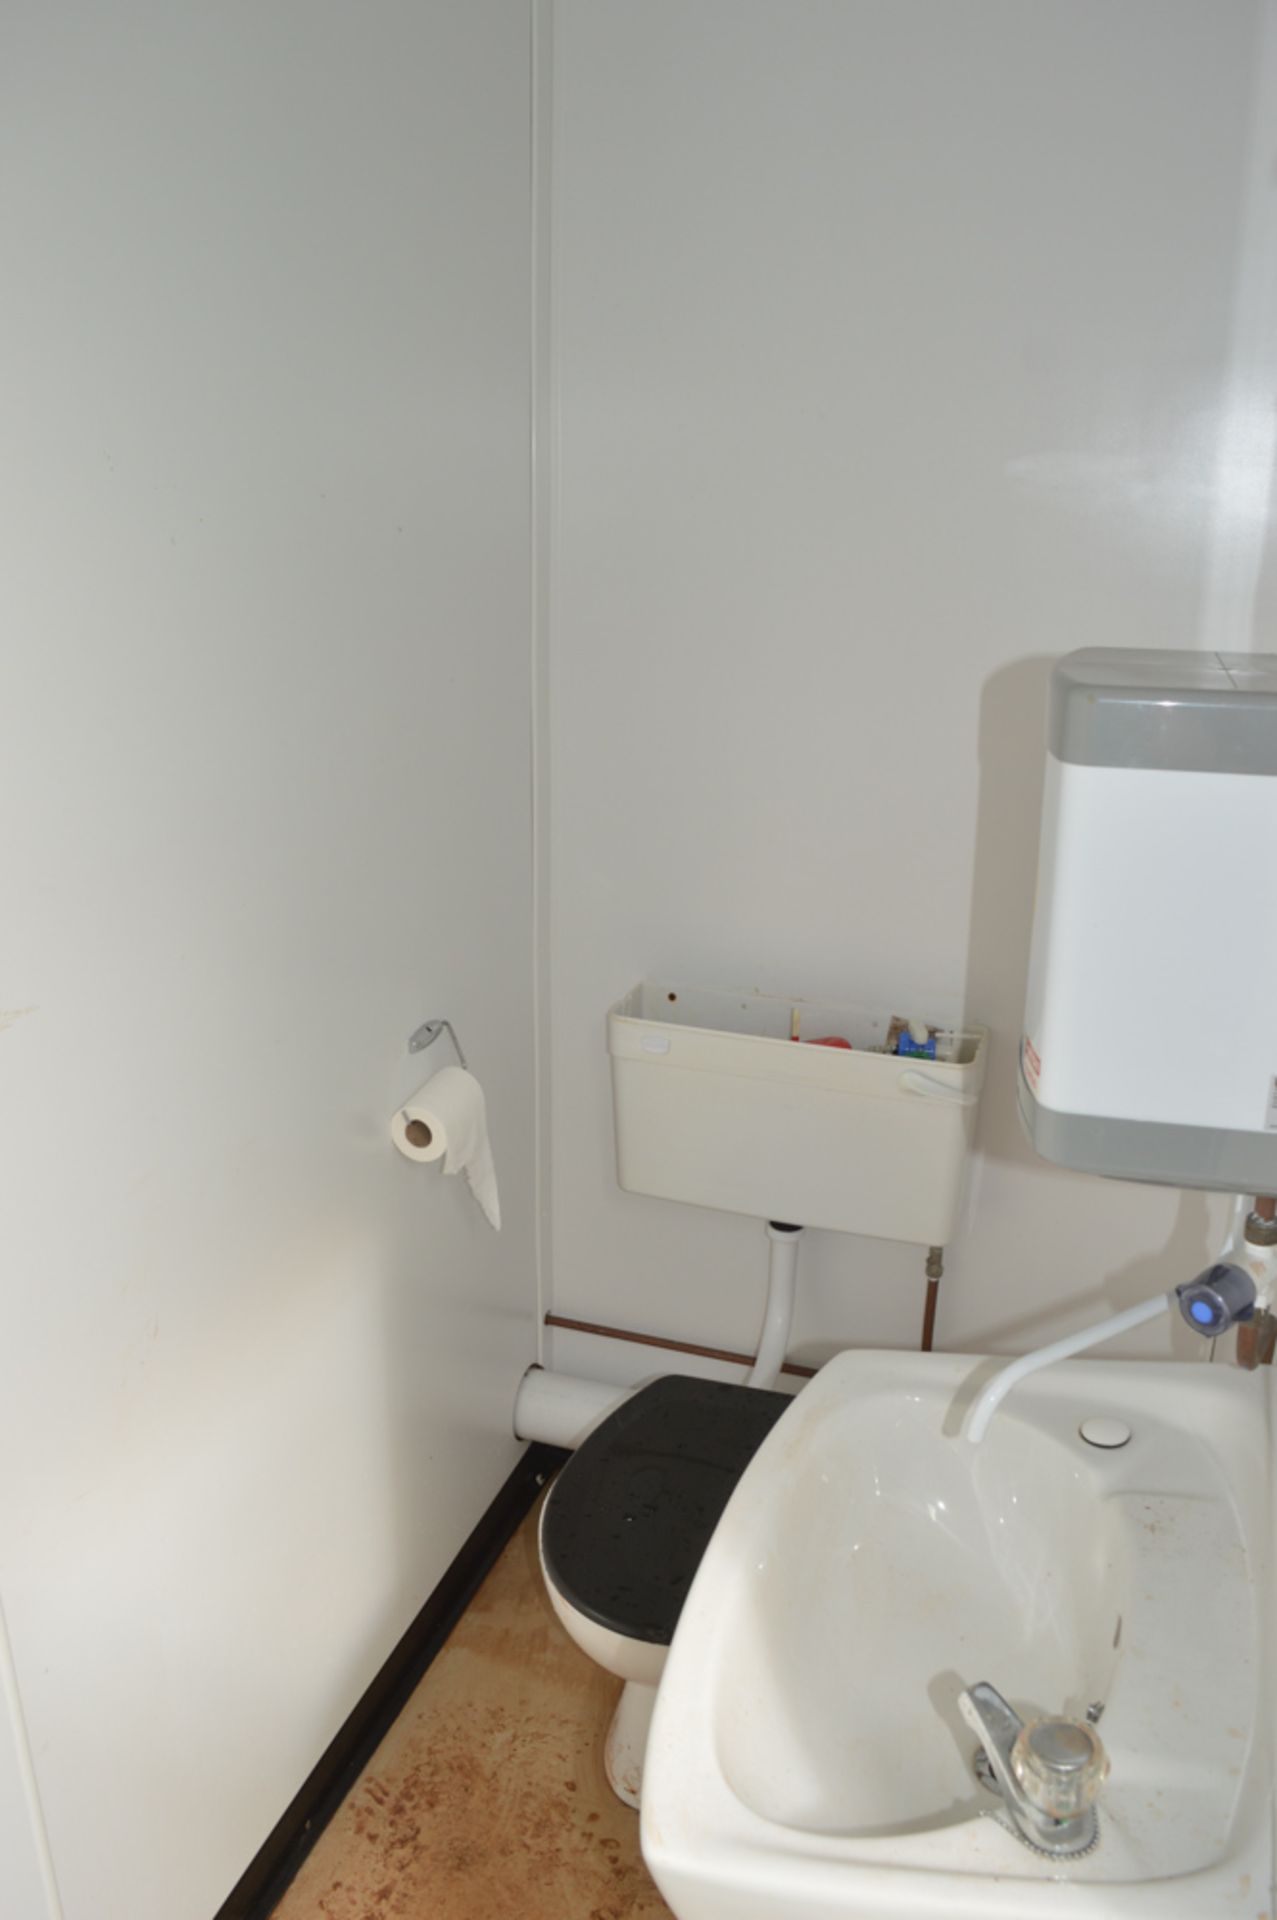 12 ft x 8 ft 2+1 steel anti vandal site toilet unit c/w keys A453486 - Image 5 of 5